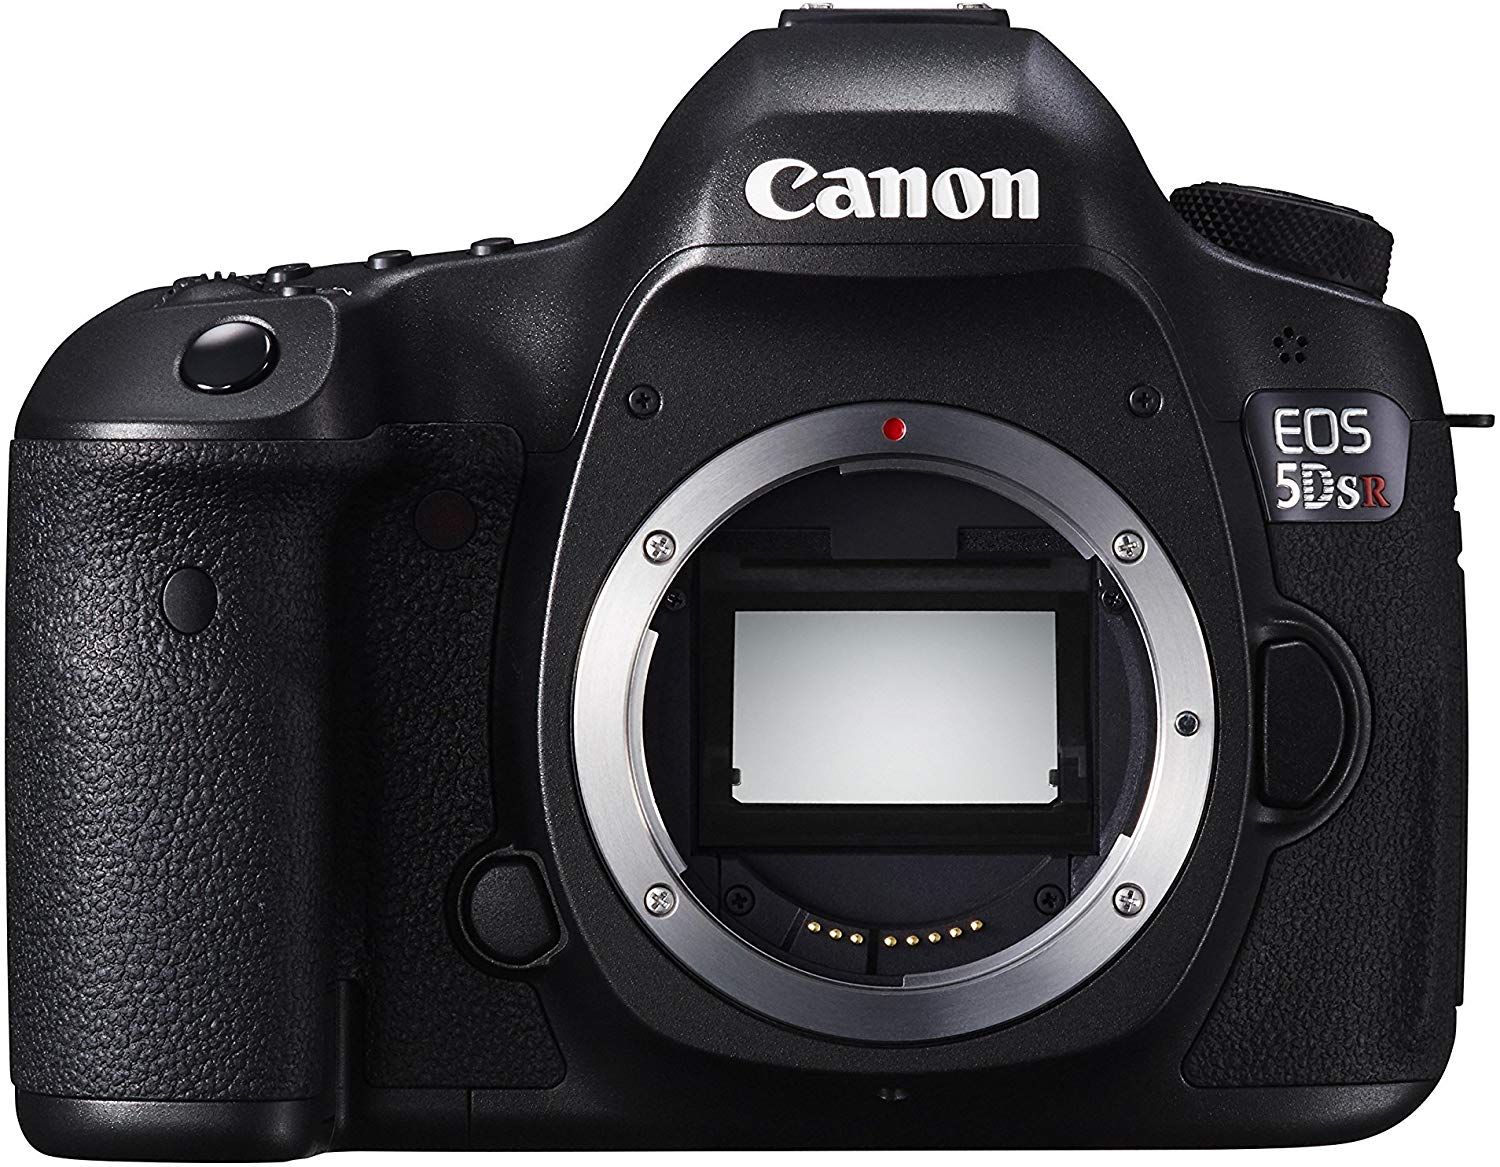 بهترین در مجموع: دوربین Canon EOS 5DS R